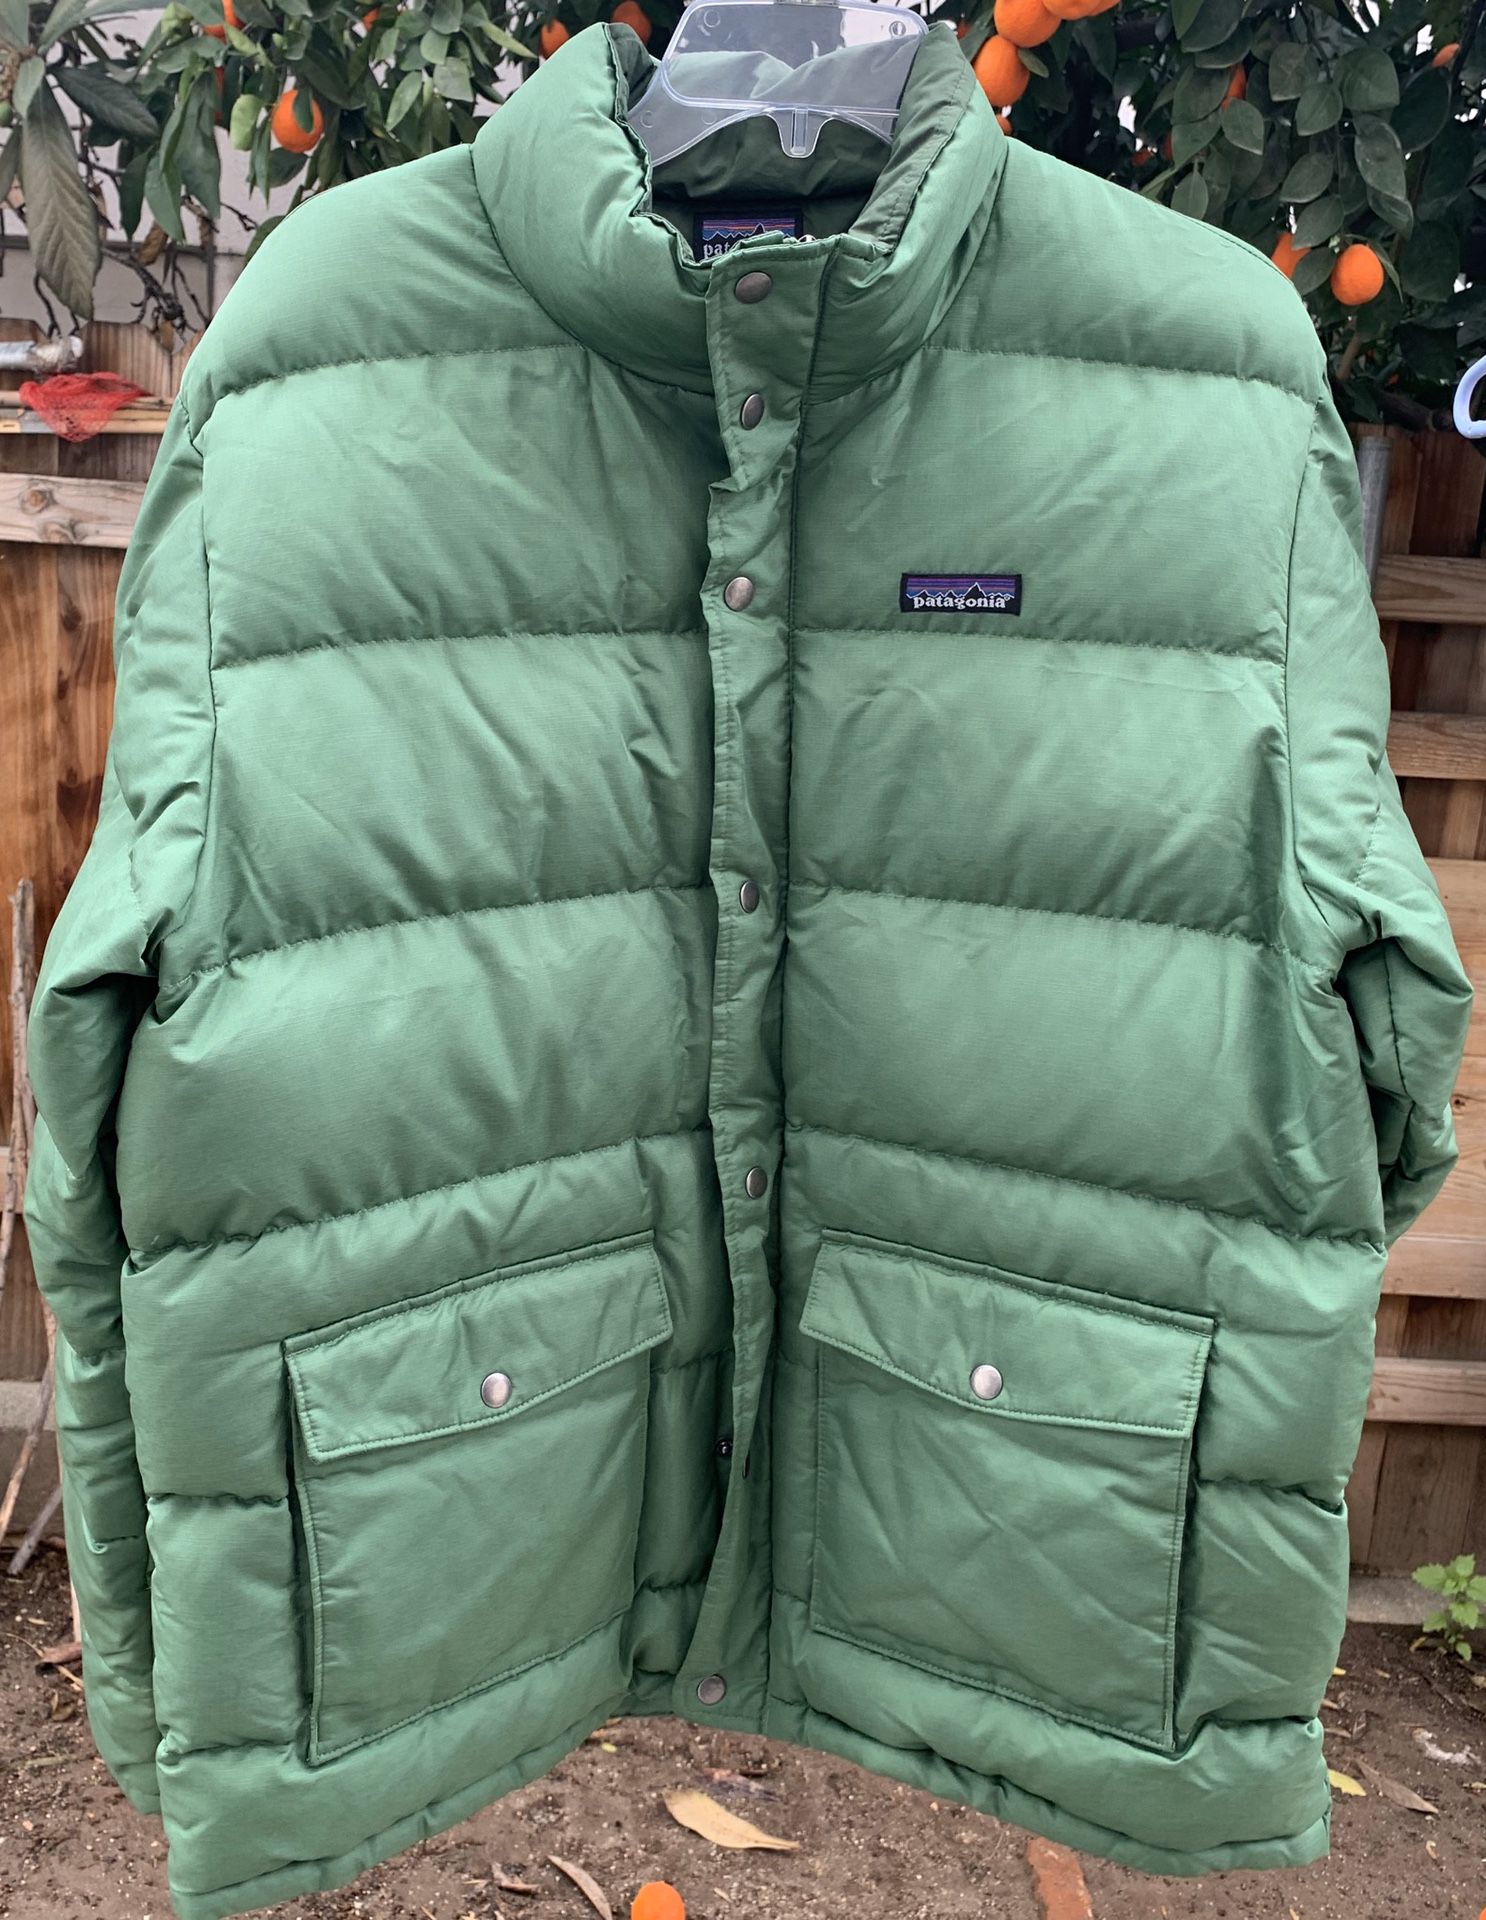 Patagonia down jacket size large